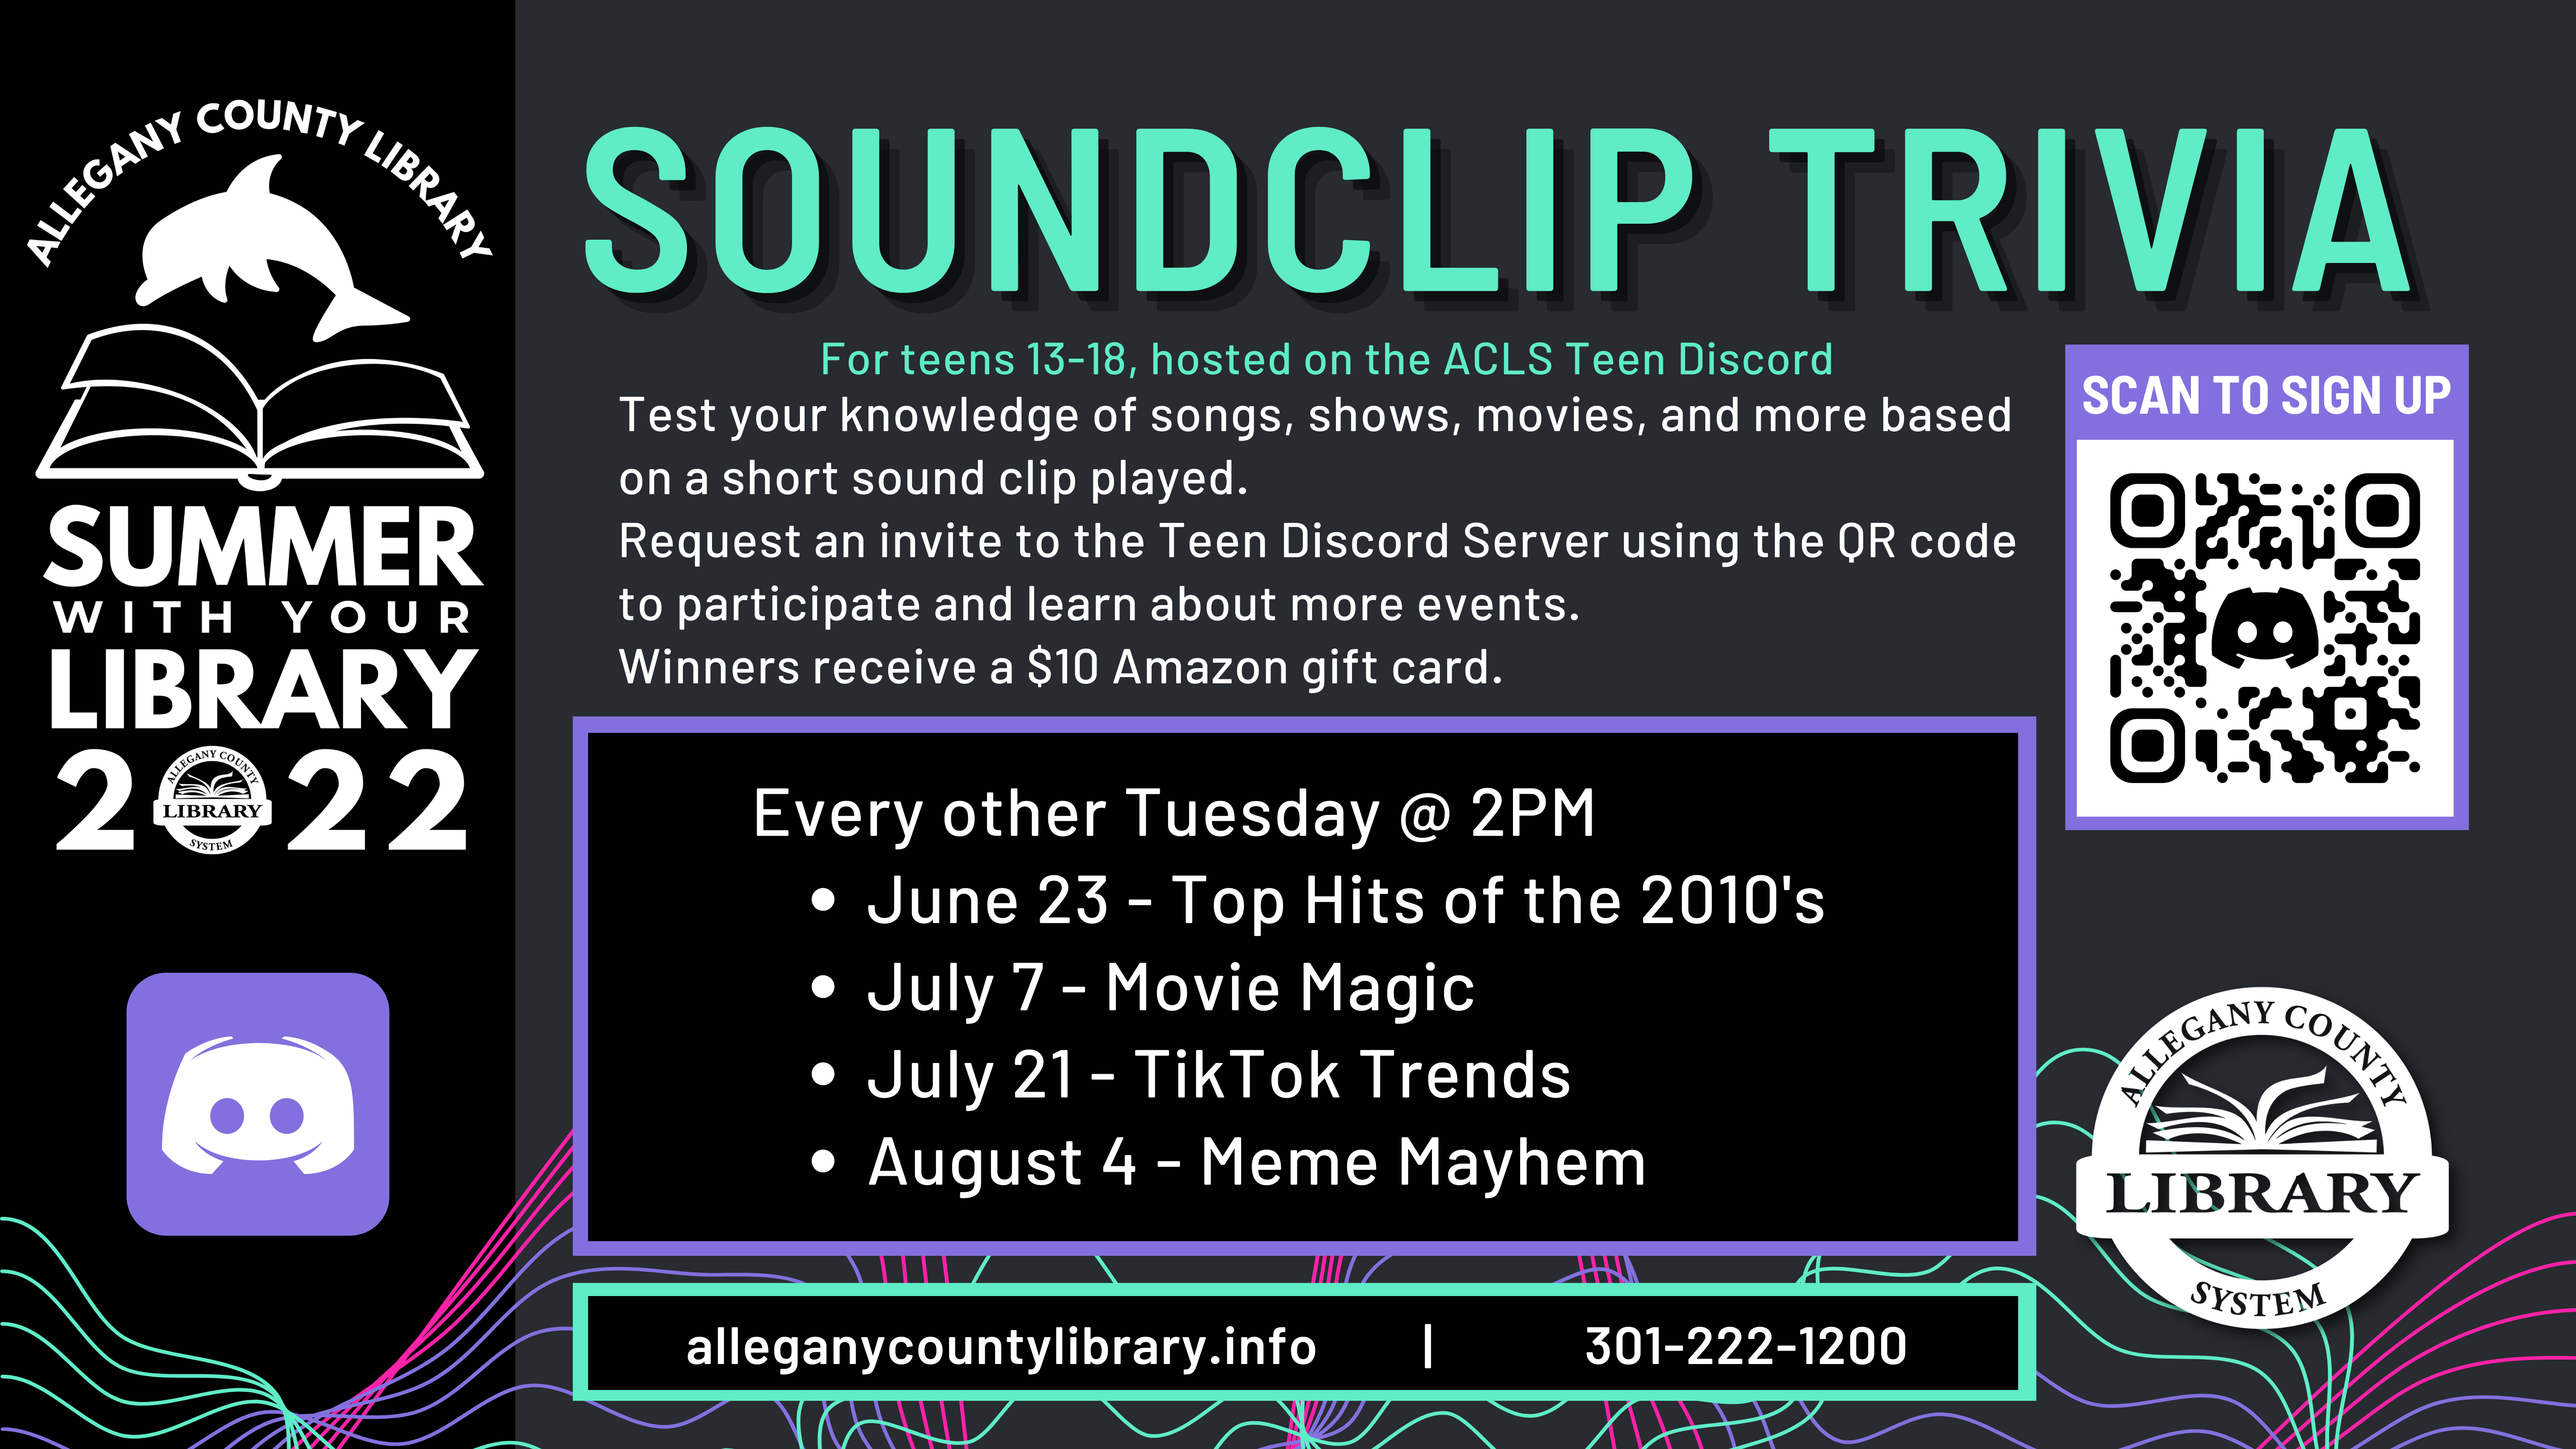 Soundclip trivia details